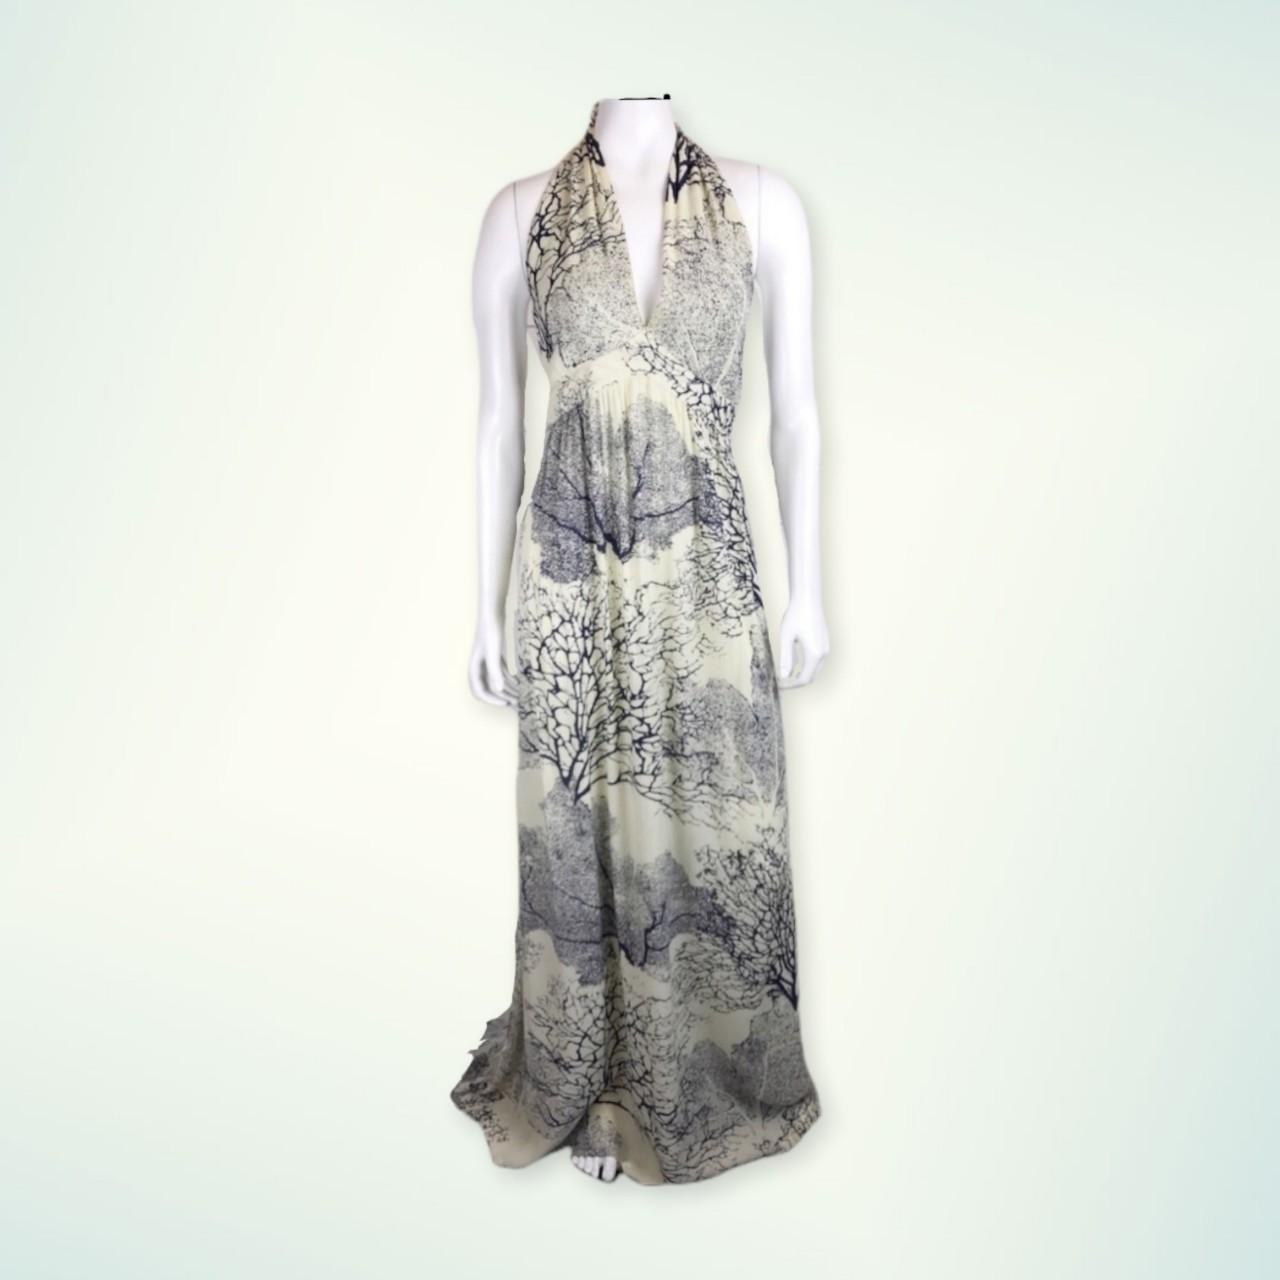 Product Image 1 - Sleeveless Maxi Dress, size Large.
Made